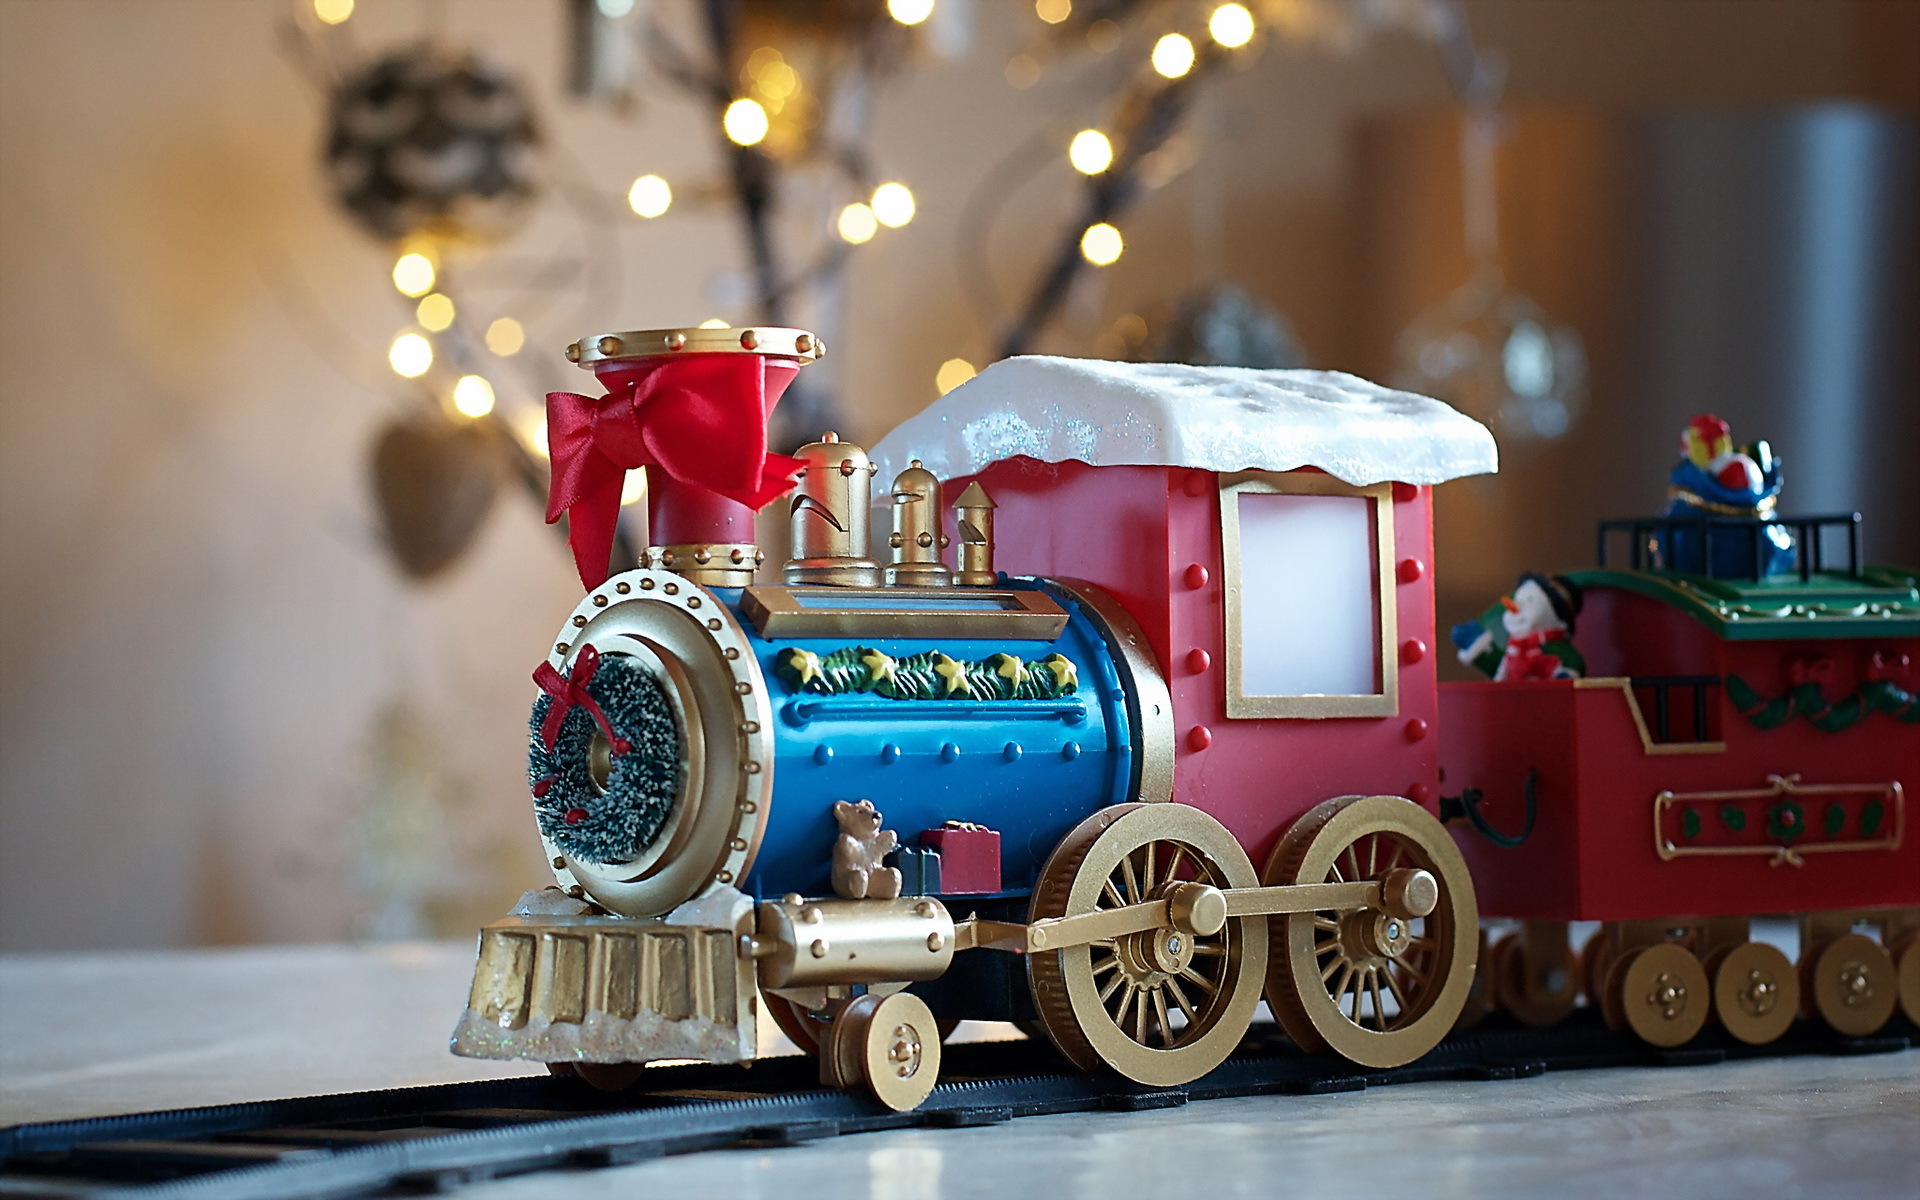 Скачать обои бесплатно Рождество, Игрушка, Поезд, Сделано Человеком картинка на рабочий стол ПК